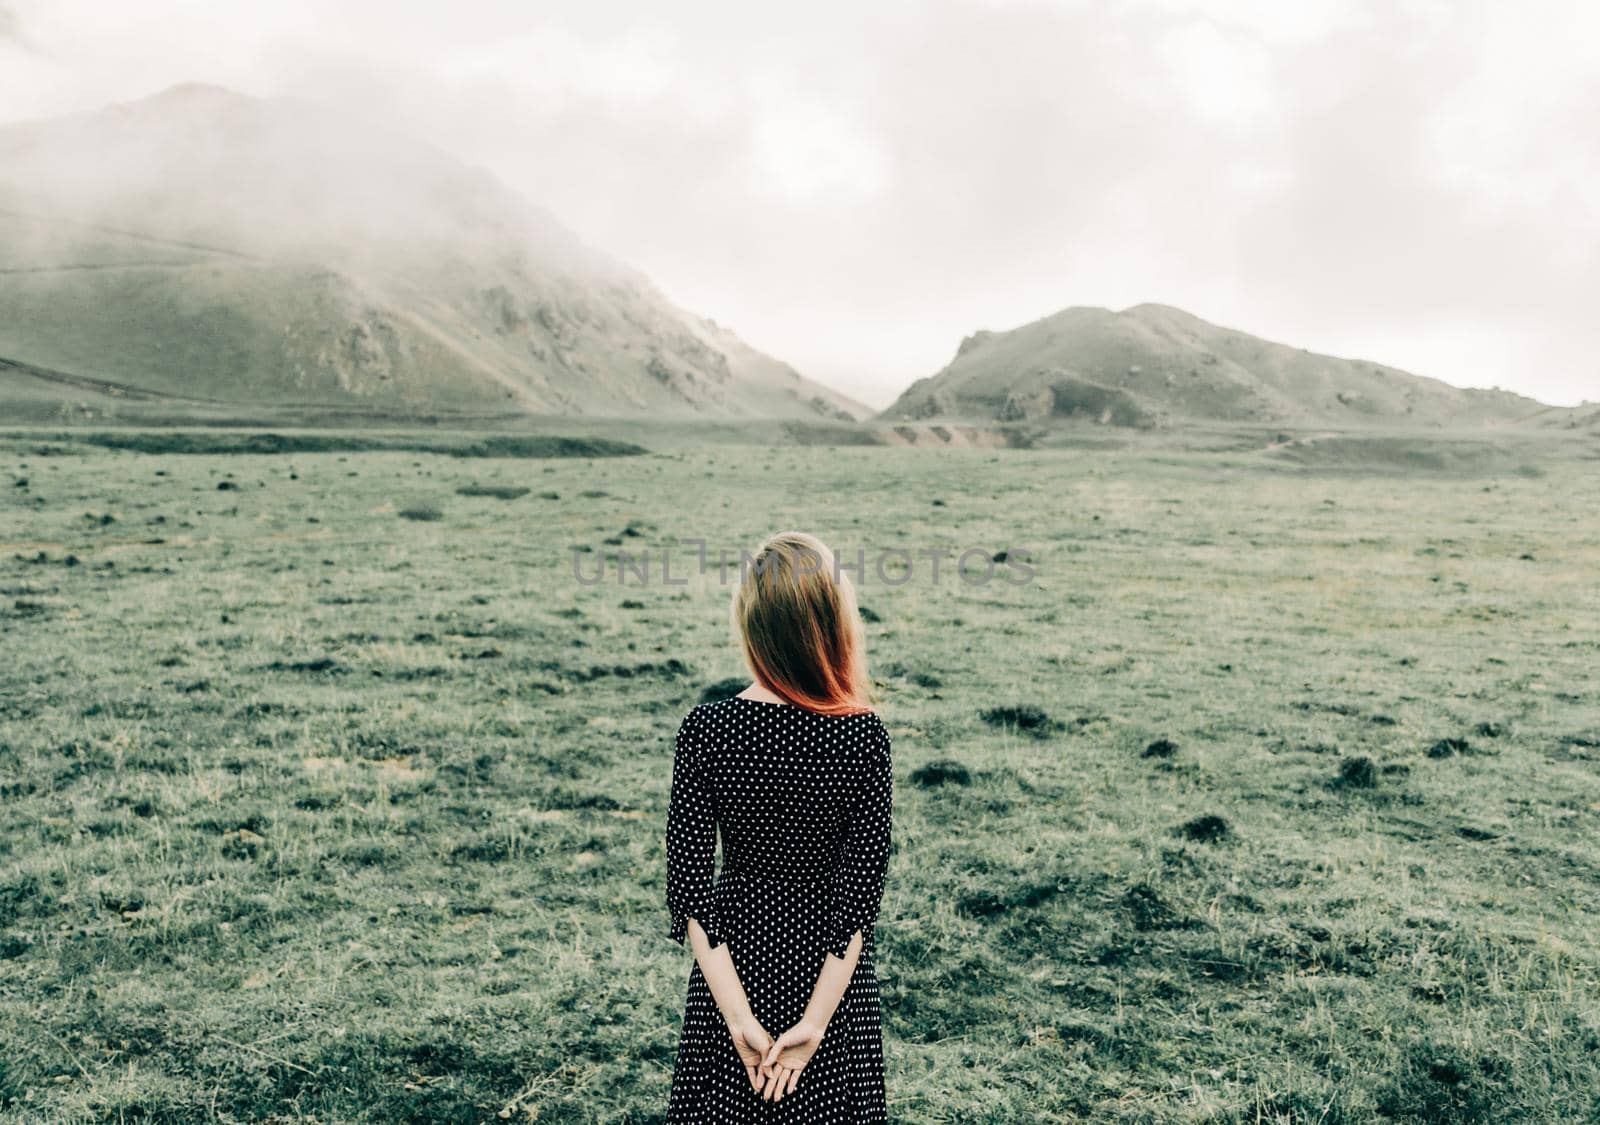 Woman in dress walking in summer mountains. by alexAleksei